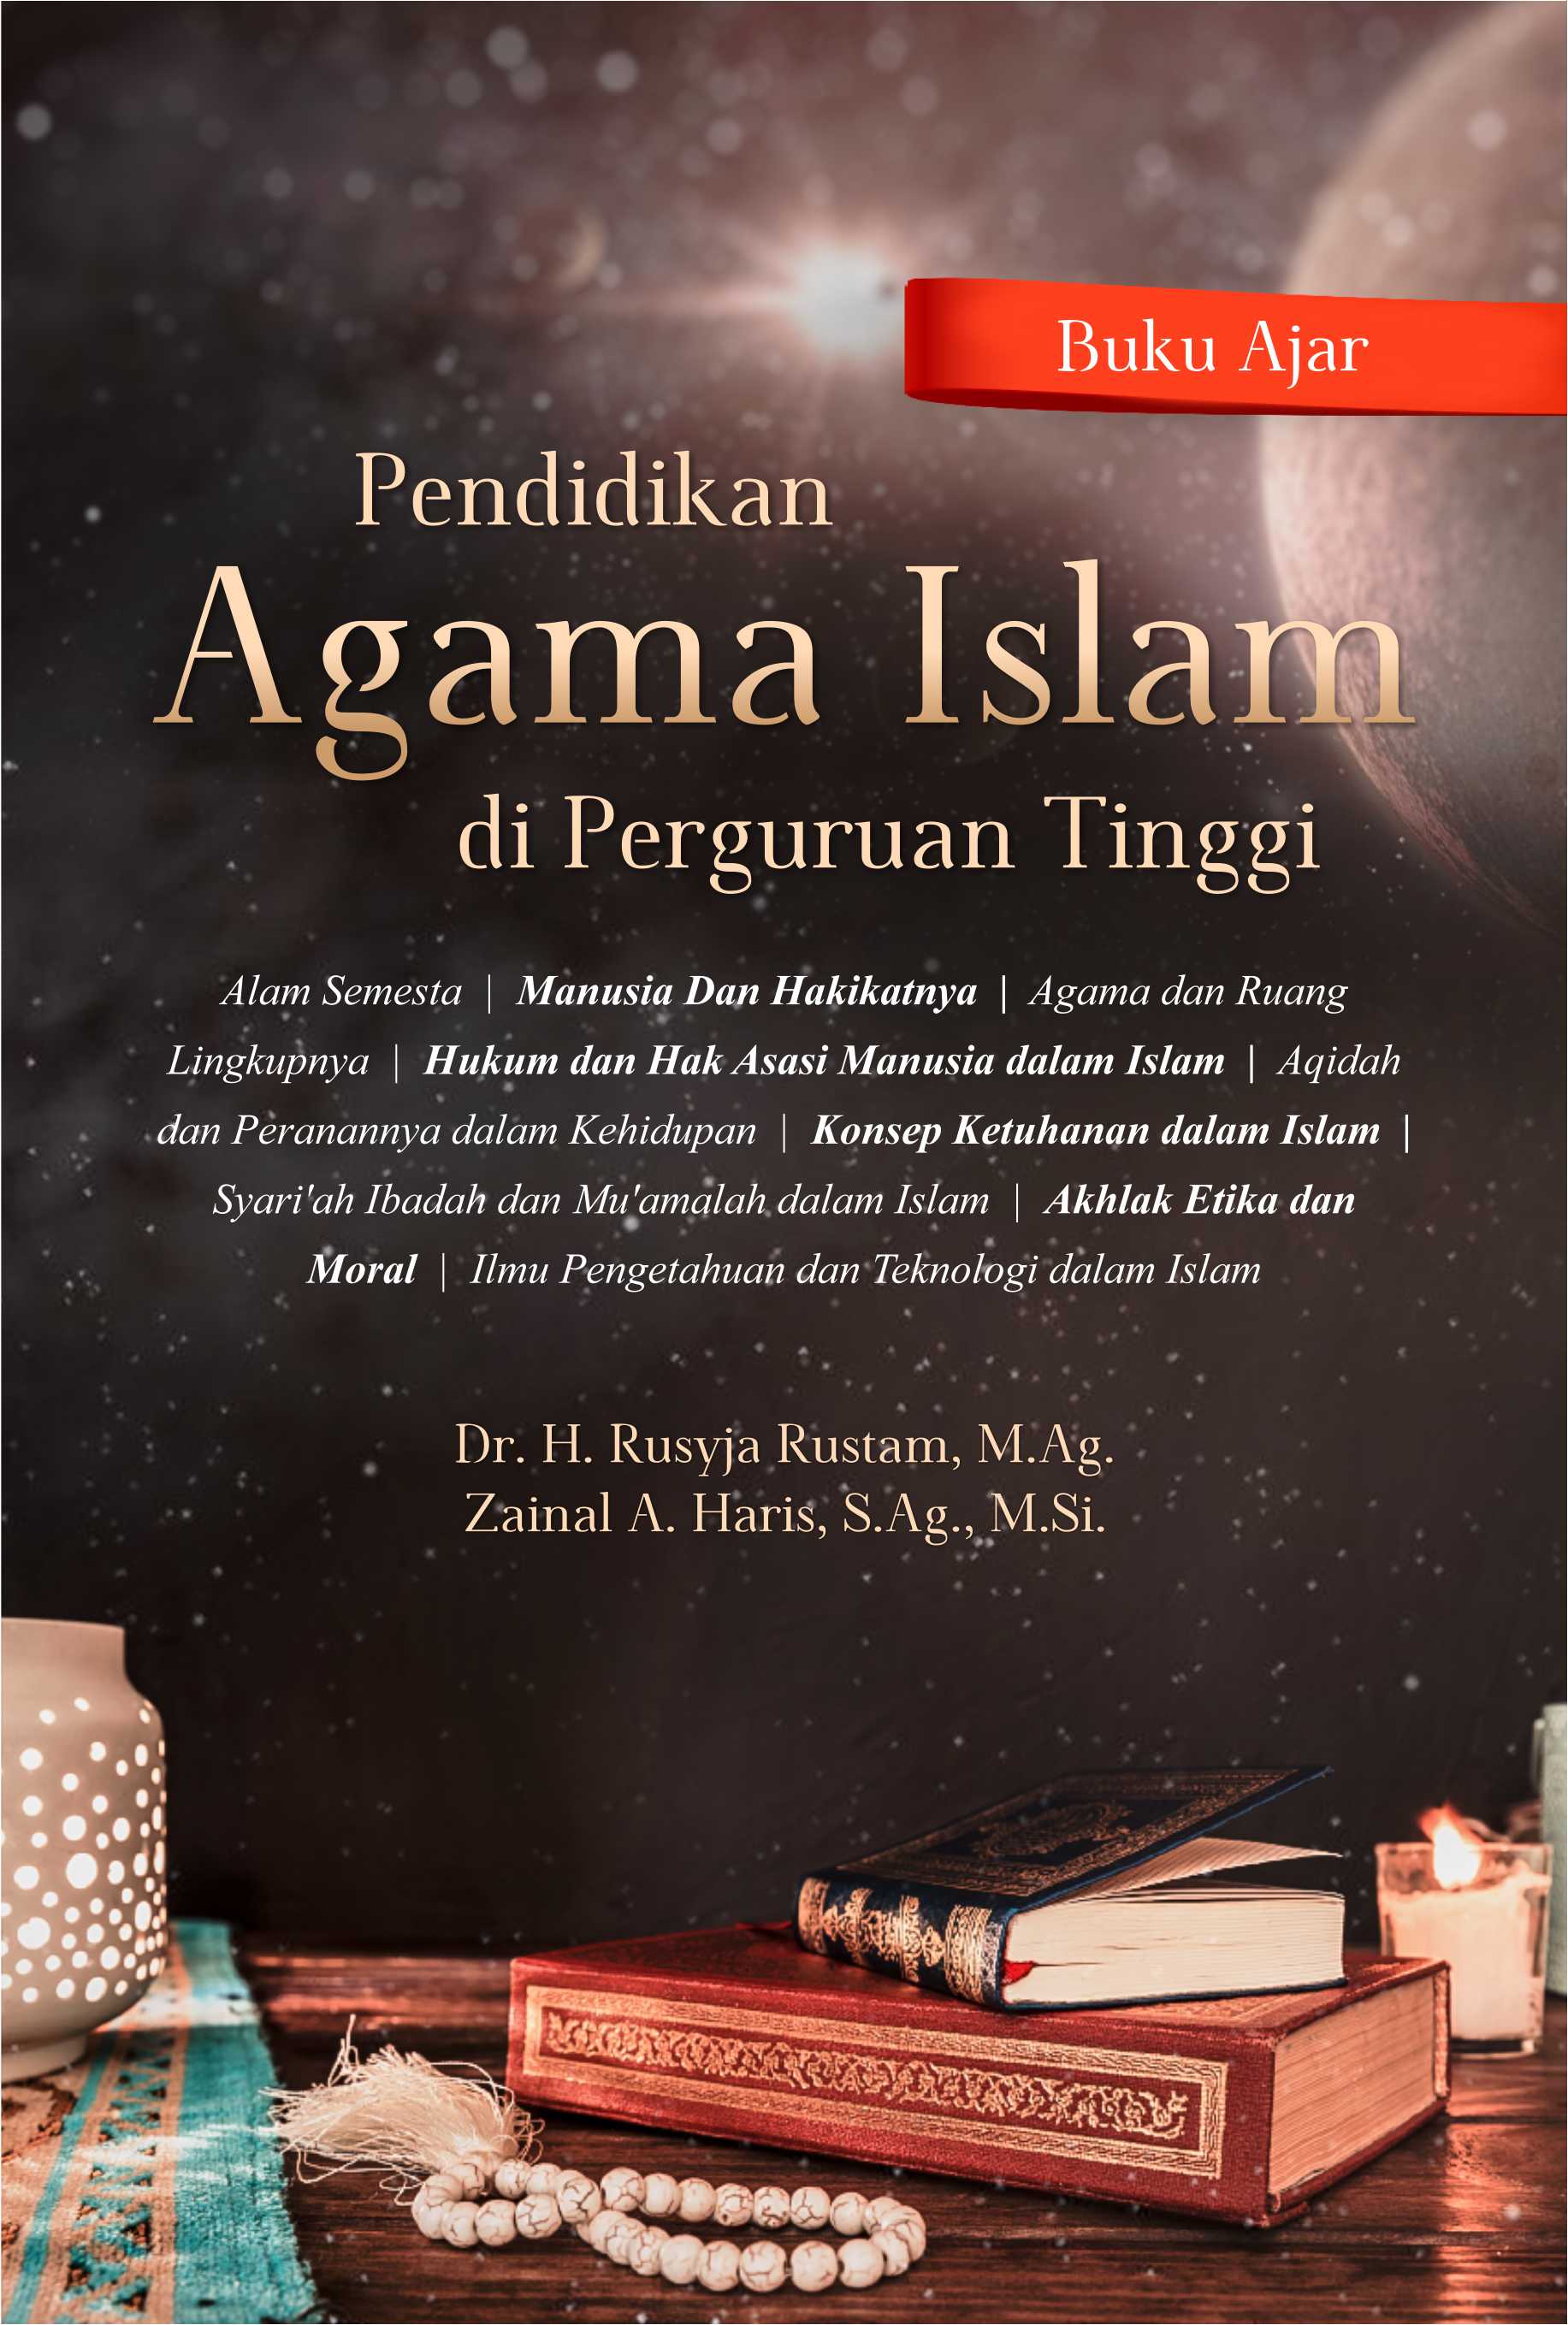 Buku Ajar Pendidikan Agama Islam Di Perguruan Tinggi - Deepublish